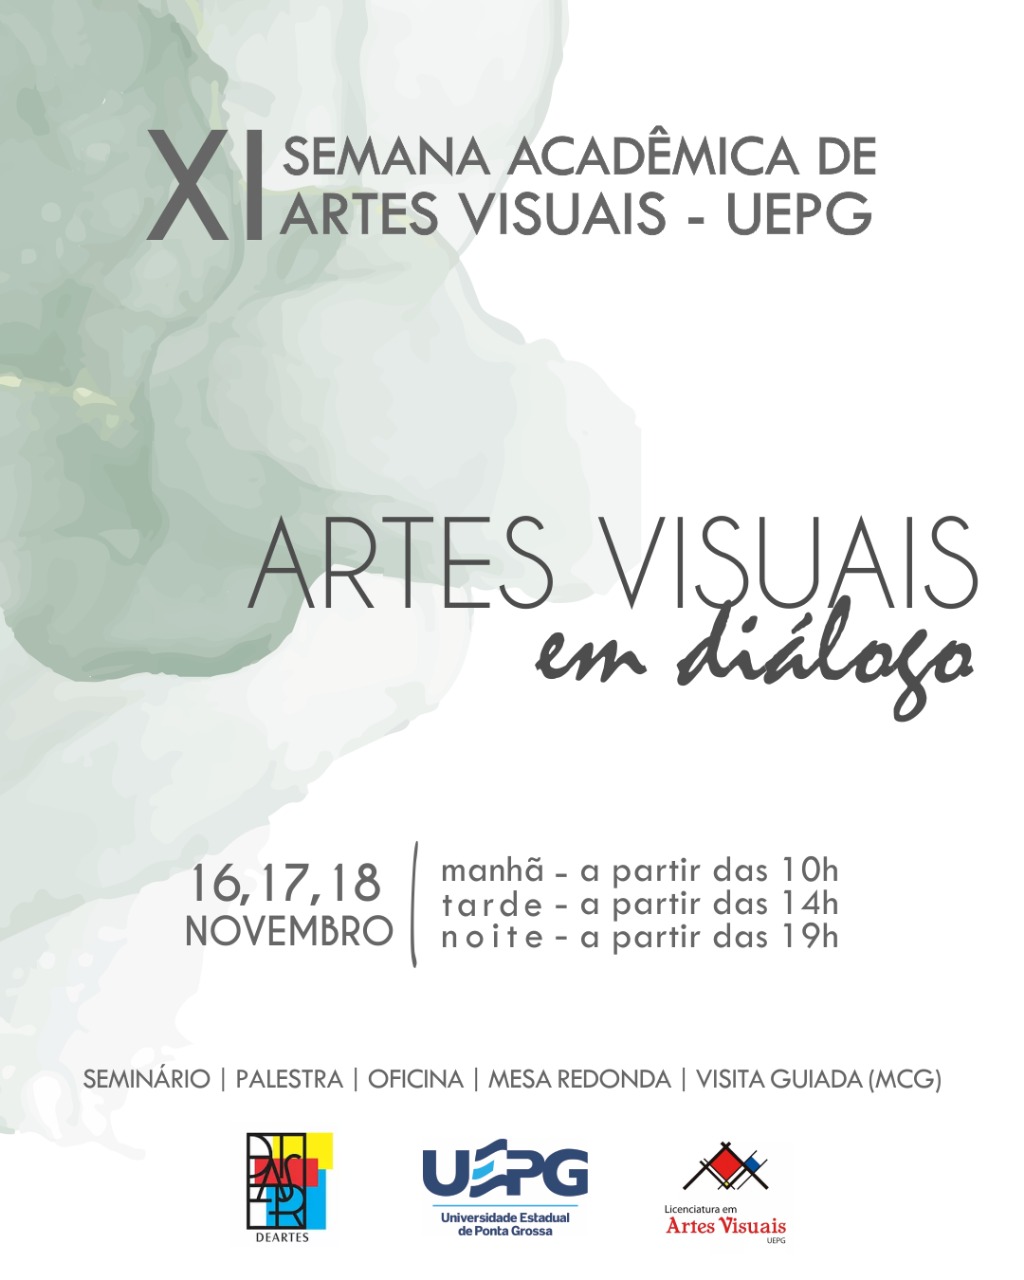 XI Semana de Artes Visuais UEPG – “ARTES VISUAIS EM DIÁLOGO”